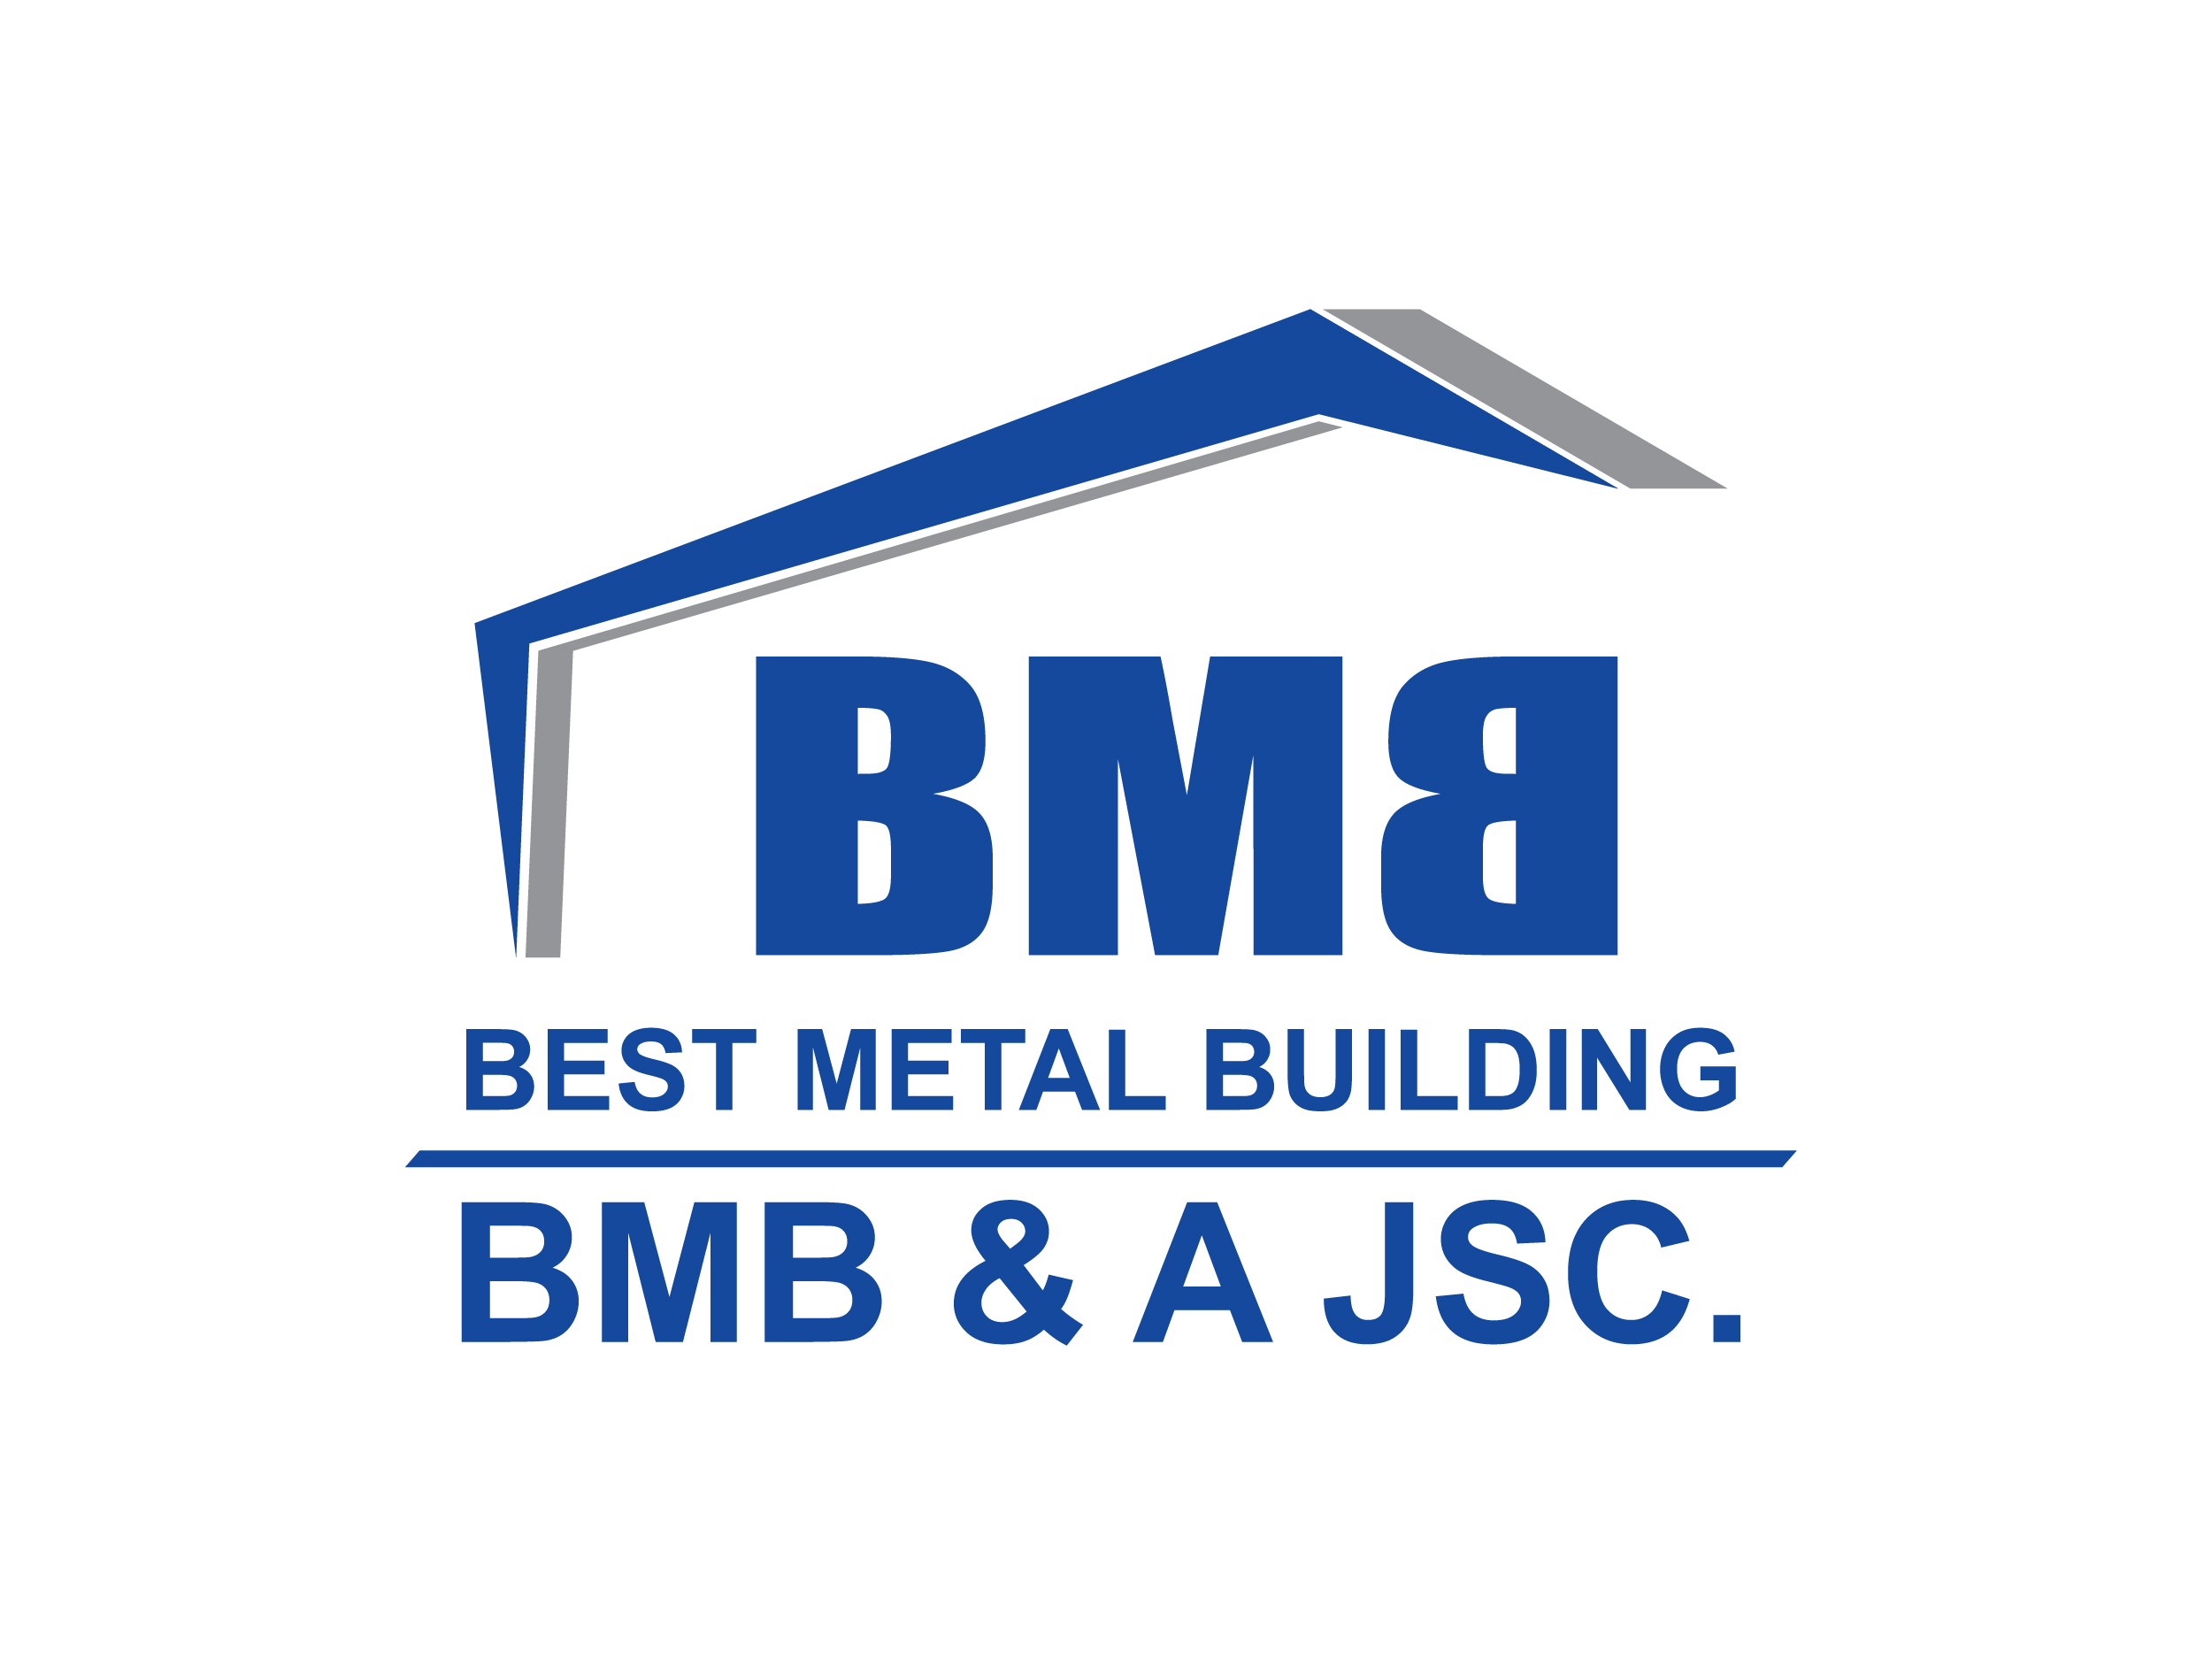 Nhà thép tiền chế BMB đã trở thành lựa chọn số một của các nhà xây dựng, nhờ vào chất lượng sản phẩm tốt, dịch vụ chuyên nghiệp và tiện ích đa dạng. Với thiết kế thông minh và việc sử dụng nguyên vật liệu thân thiện với môi trường, nhà thép tiền chế BMB đang thúc đẩy sự phát triển bền vững trong ngành xây dựng.